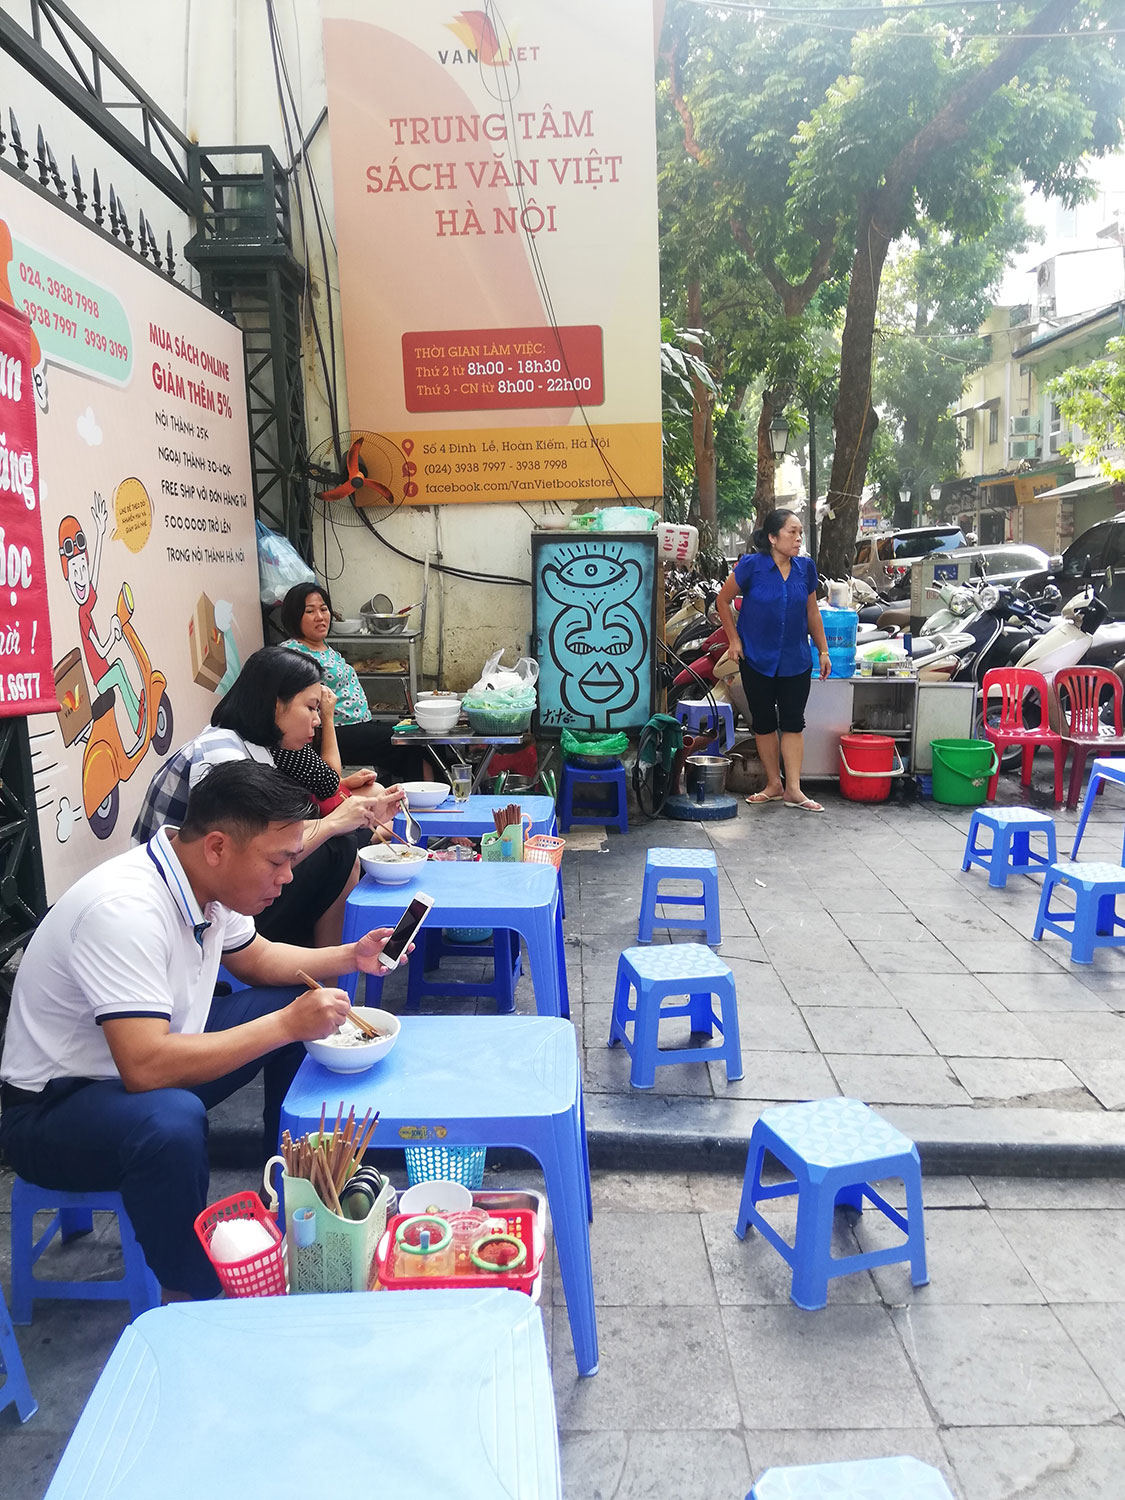 Une oeuvre de Christophe Lecoutre dans les rues de Hanoi